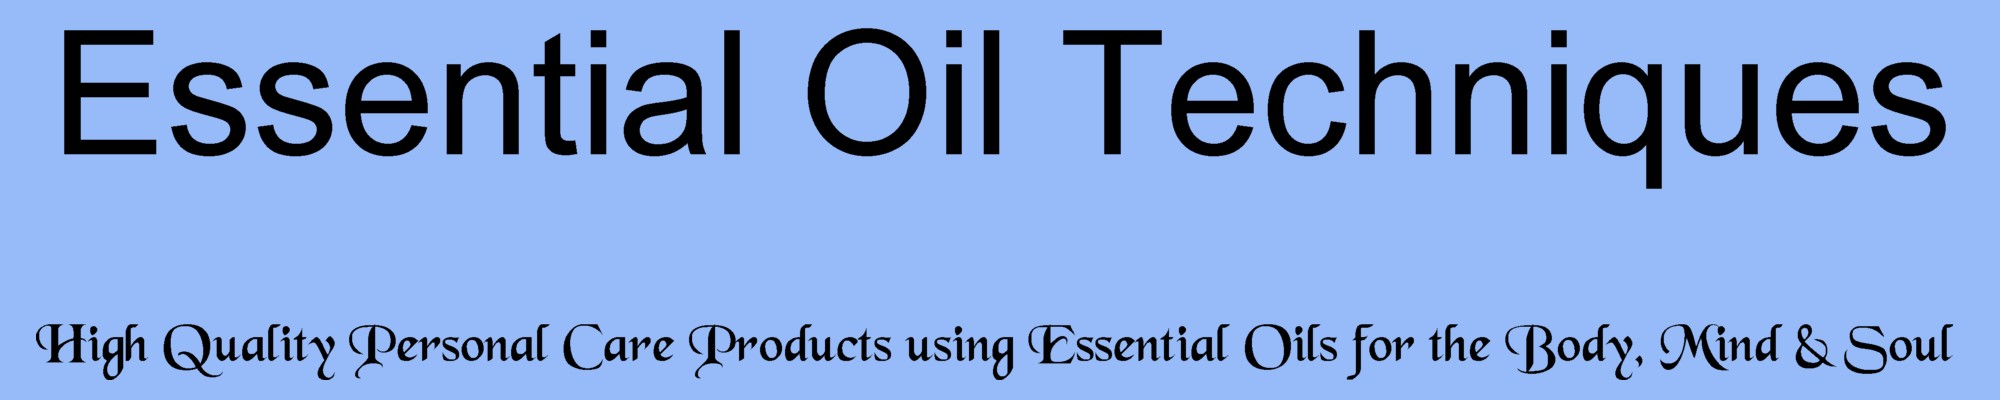 Essential Oil Techniques